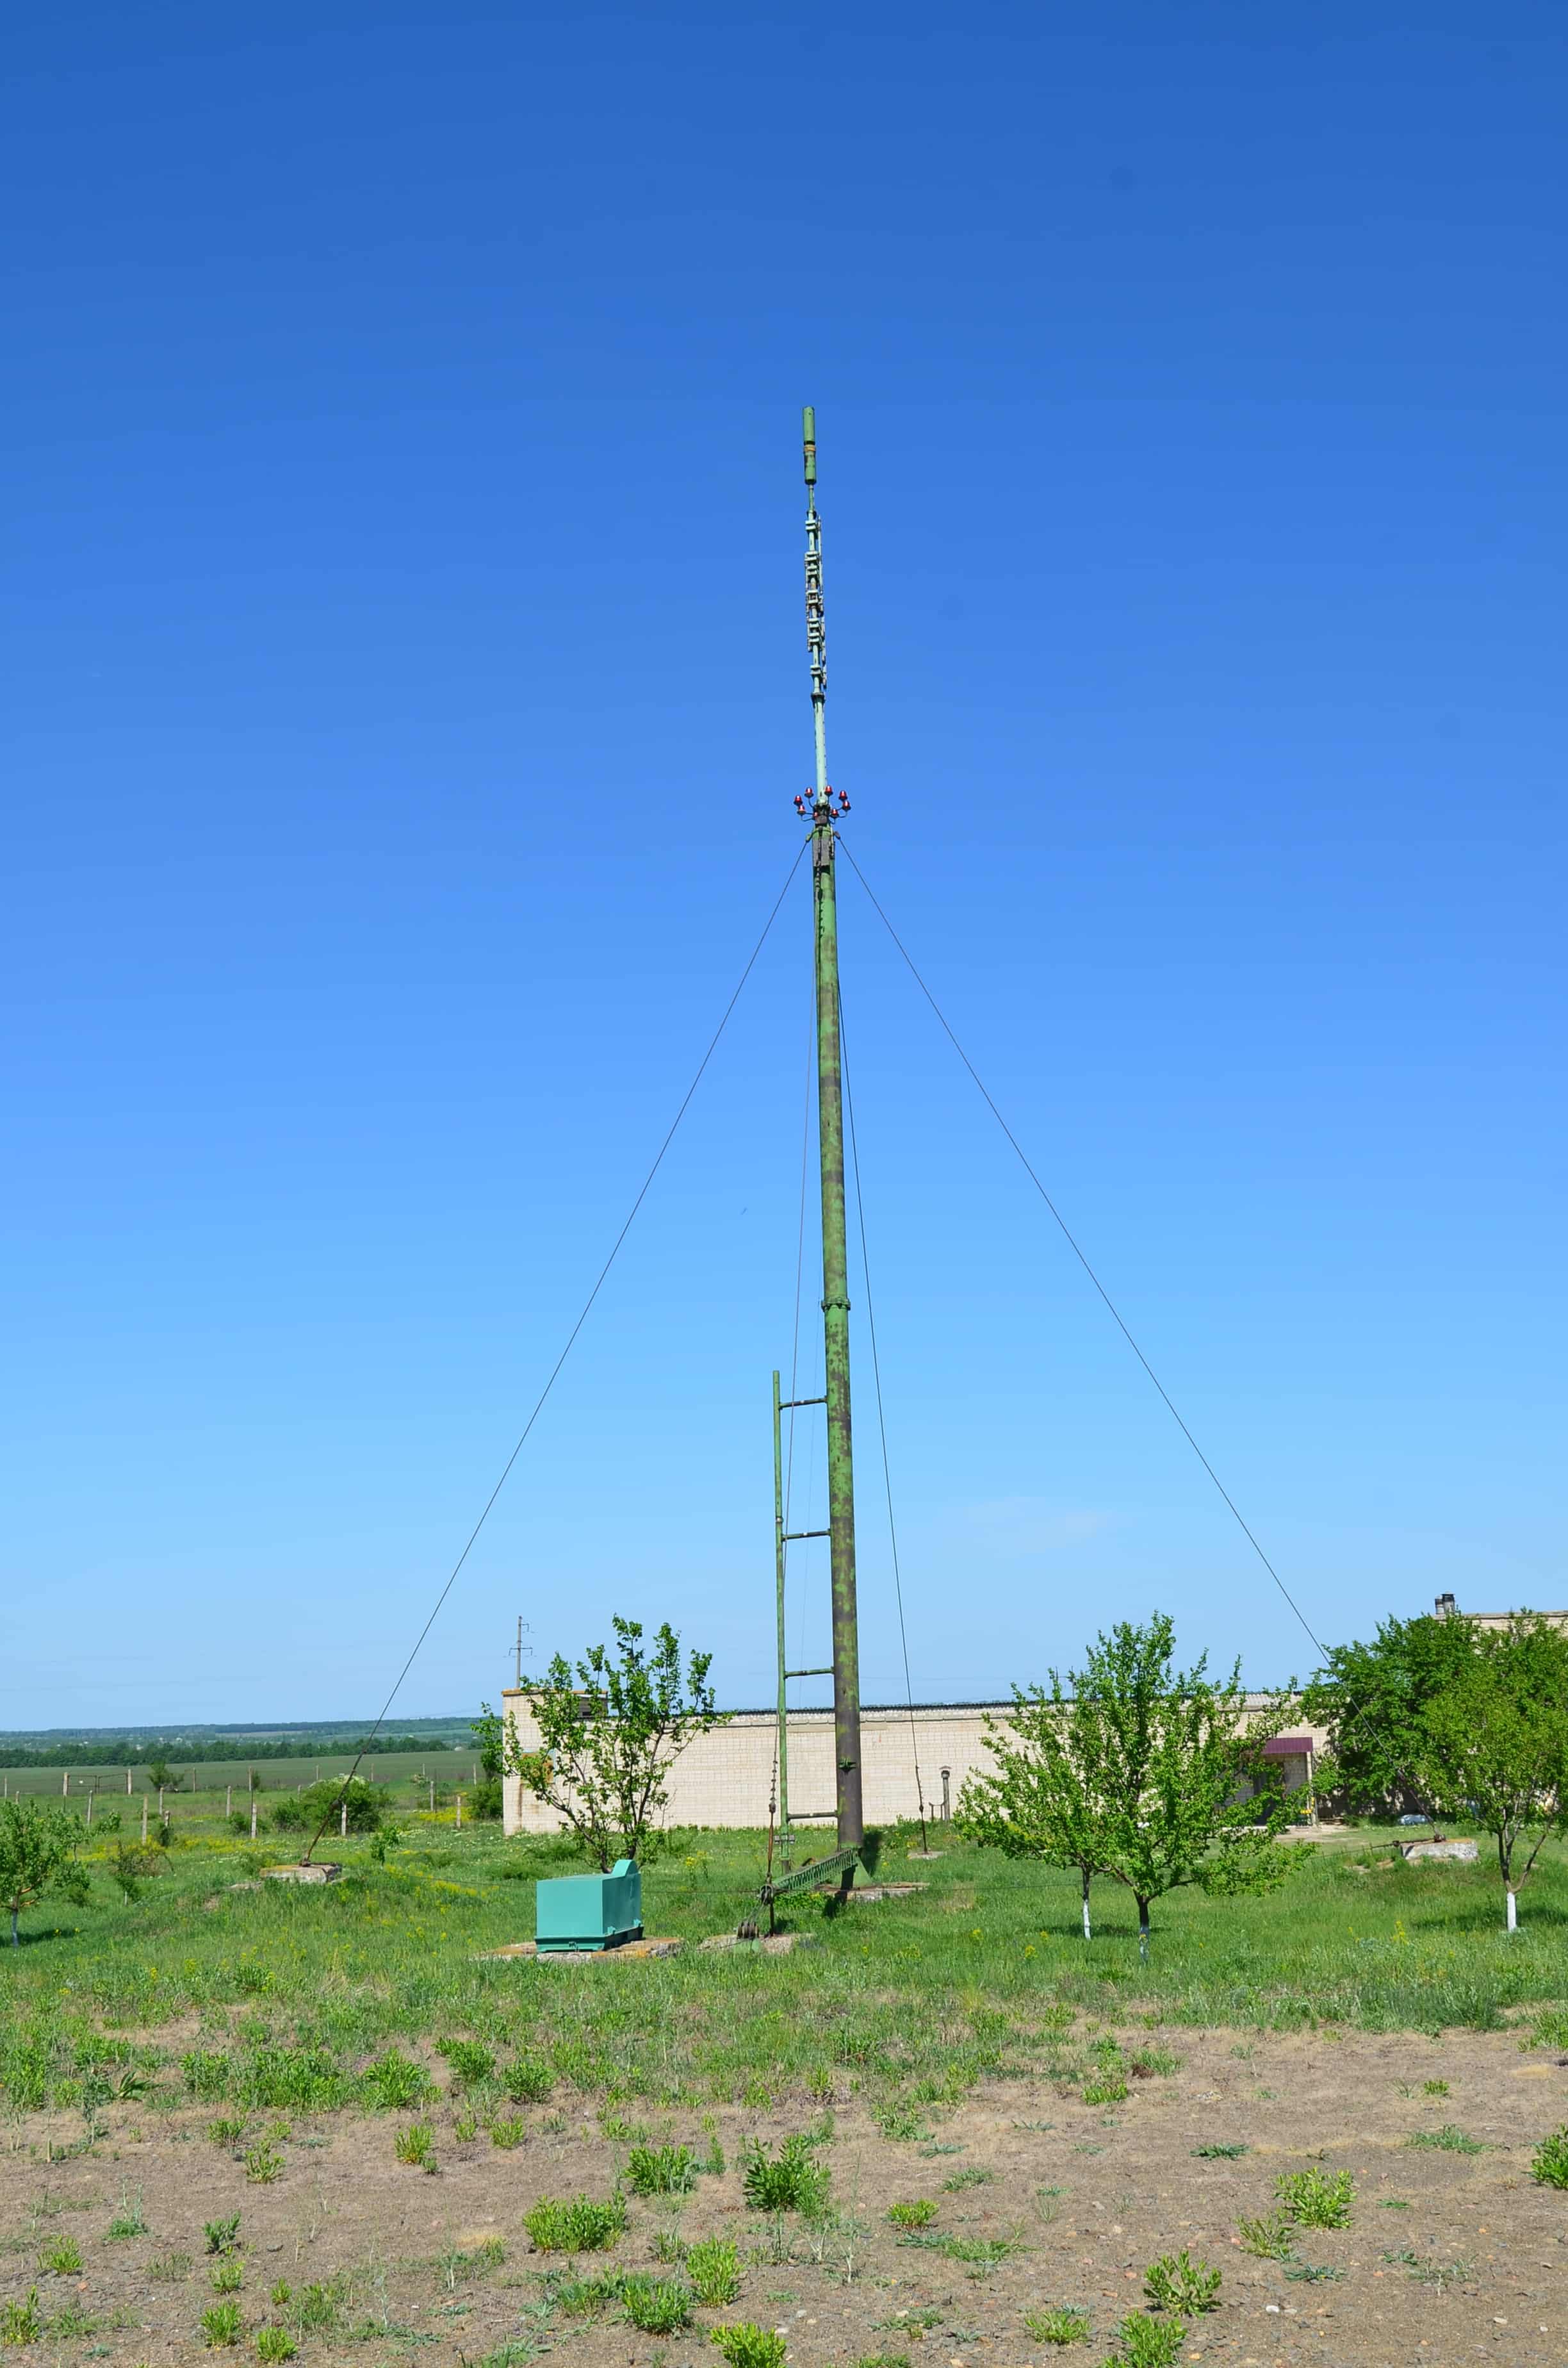 Antenna at Strategic Missile Forces Museum near Pobuzke, Ukraine